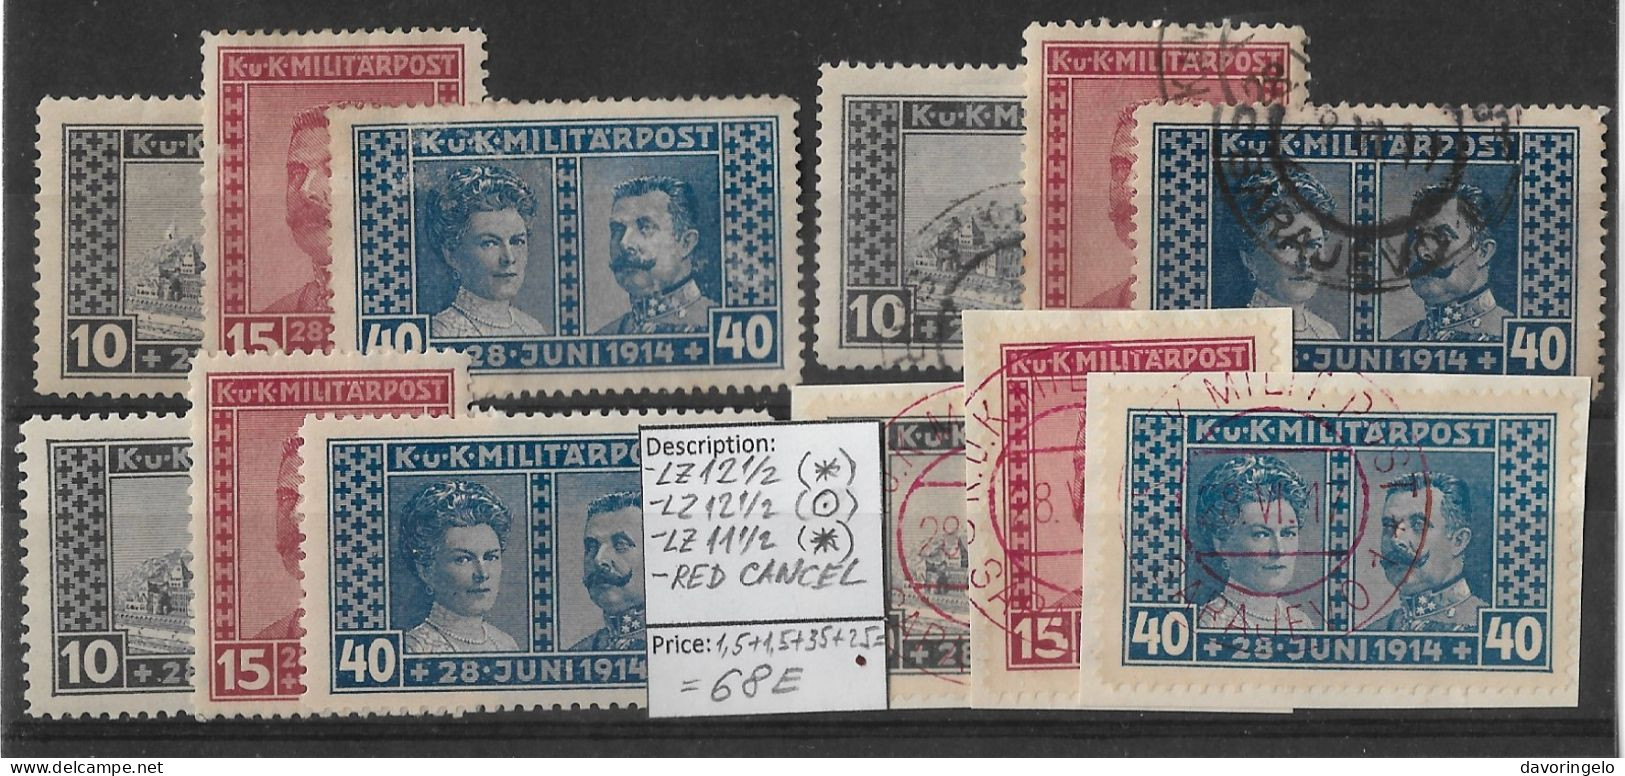 Bosnia-Herzegovina/Austria-Hungary, 1917, 4 SETS No 121-123: Perf. 12 1/2(*), 12 1/2(canc.), 11 1/2(*), SET RED CANC. - Bosnia And Herzegovina